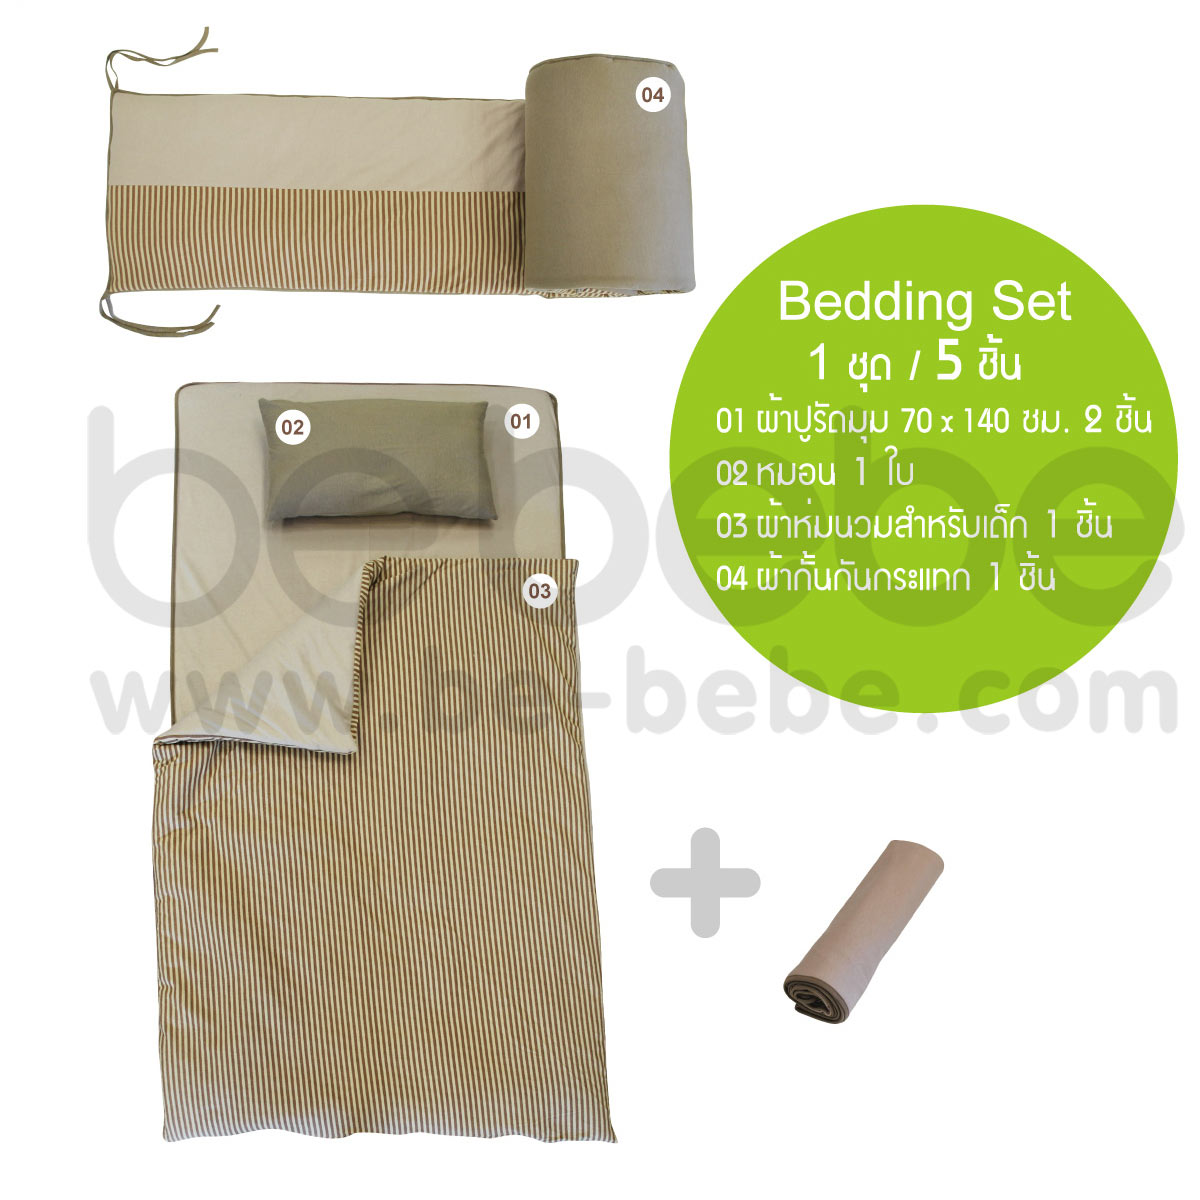 be bebe:Bedding Set 70x140 (5 Pcs.)/Big strip 